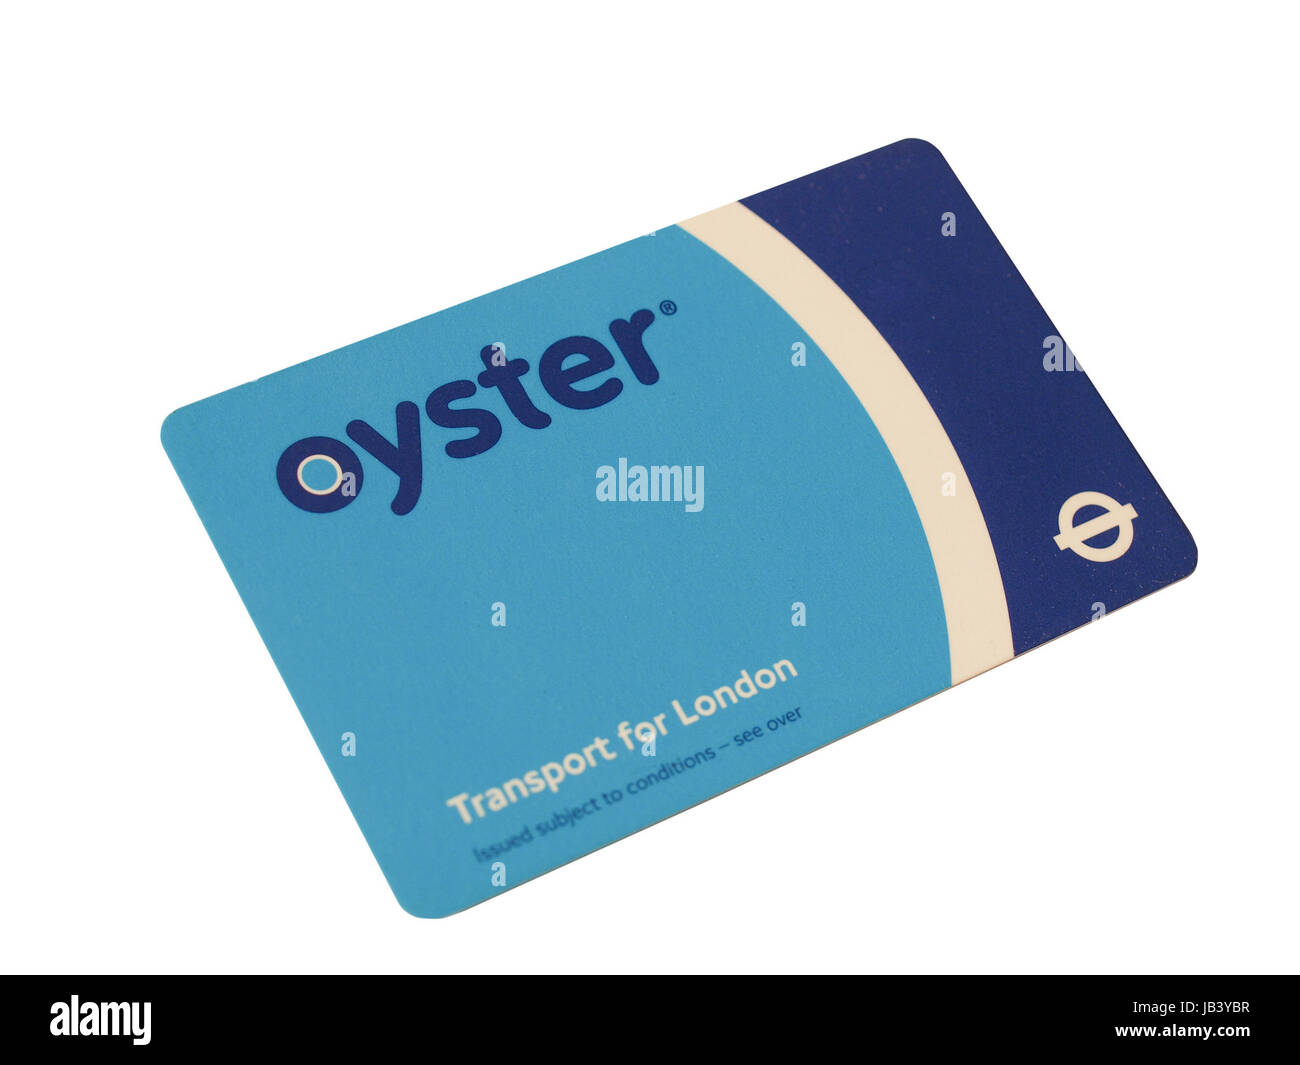 Die Oyster Card nutzt near Field Communication-Technologie für öffentliche Verkehrsmittel ticketing in und um London isoliert auf weißem Hintergrund Stockfoto